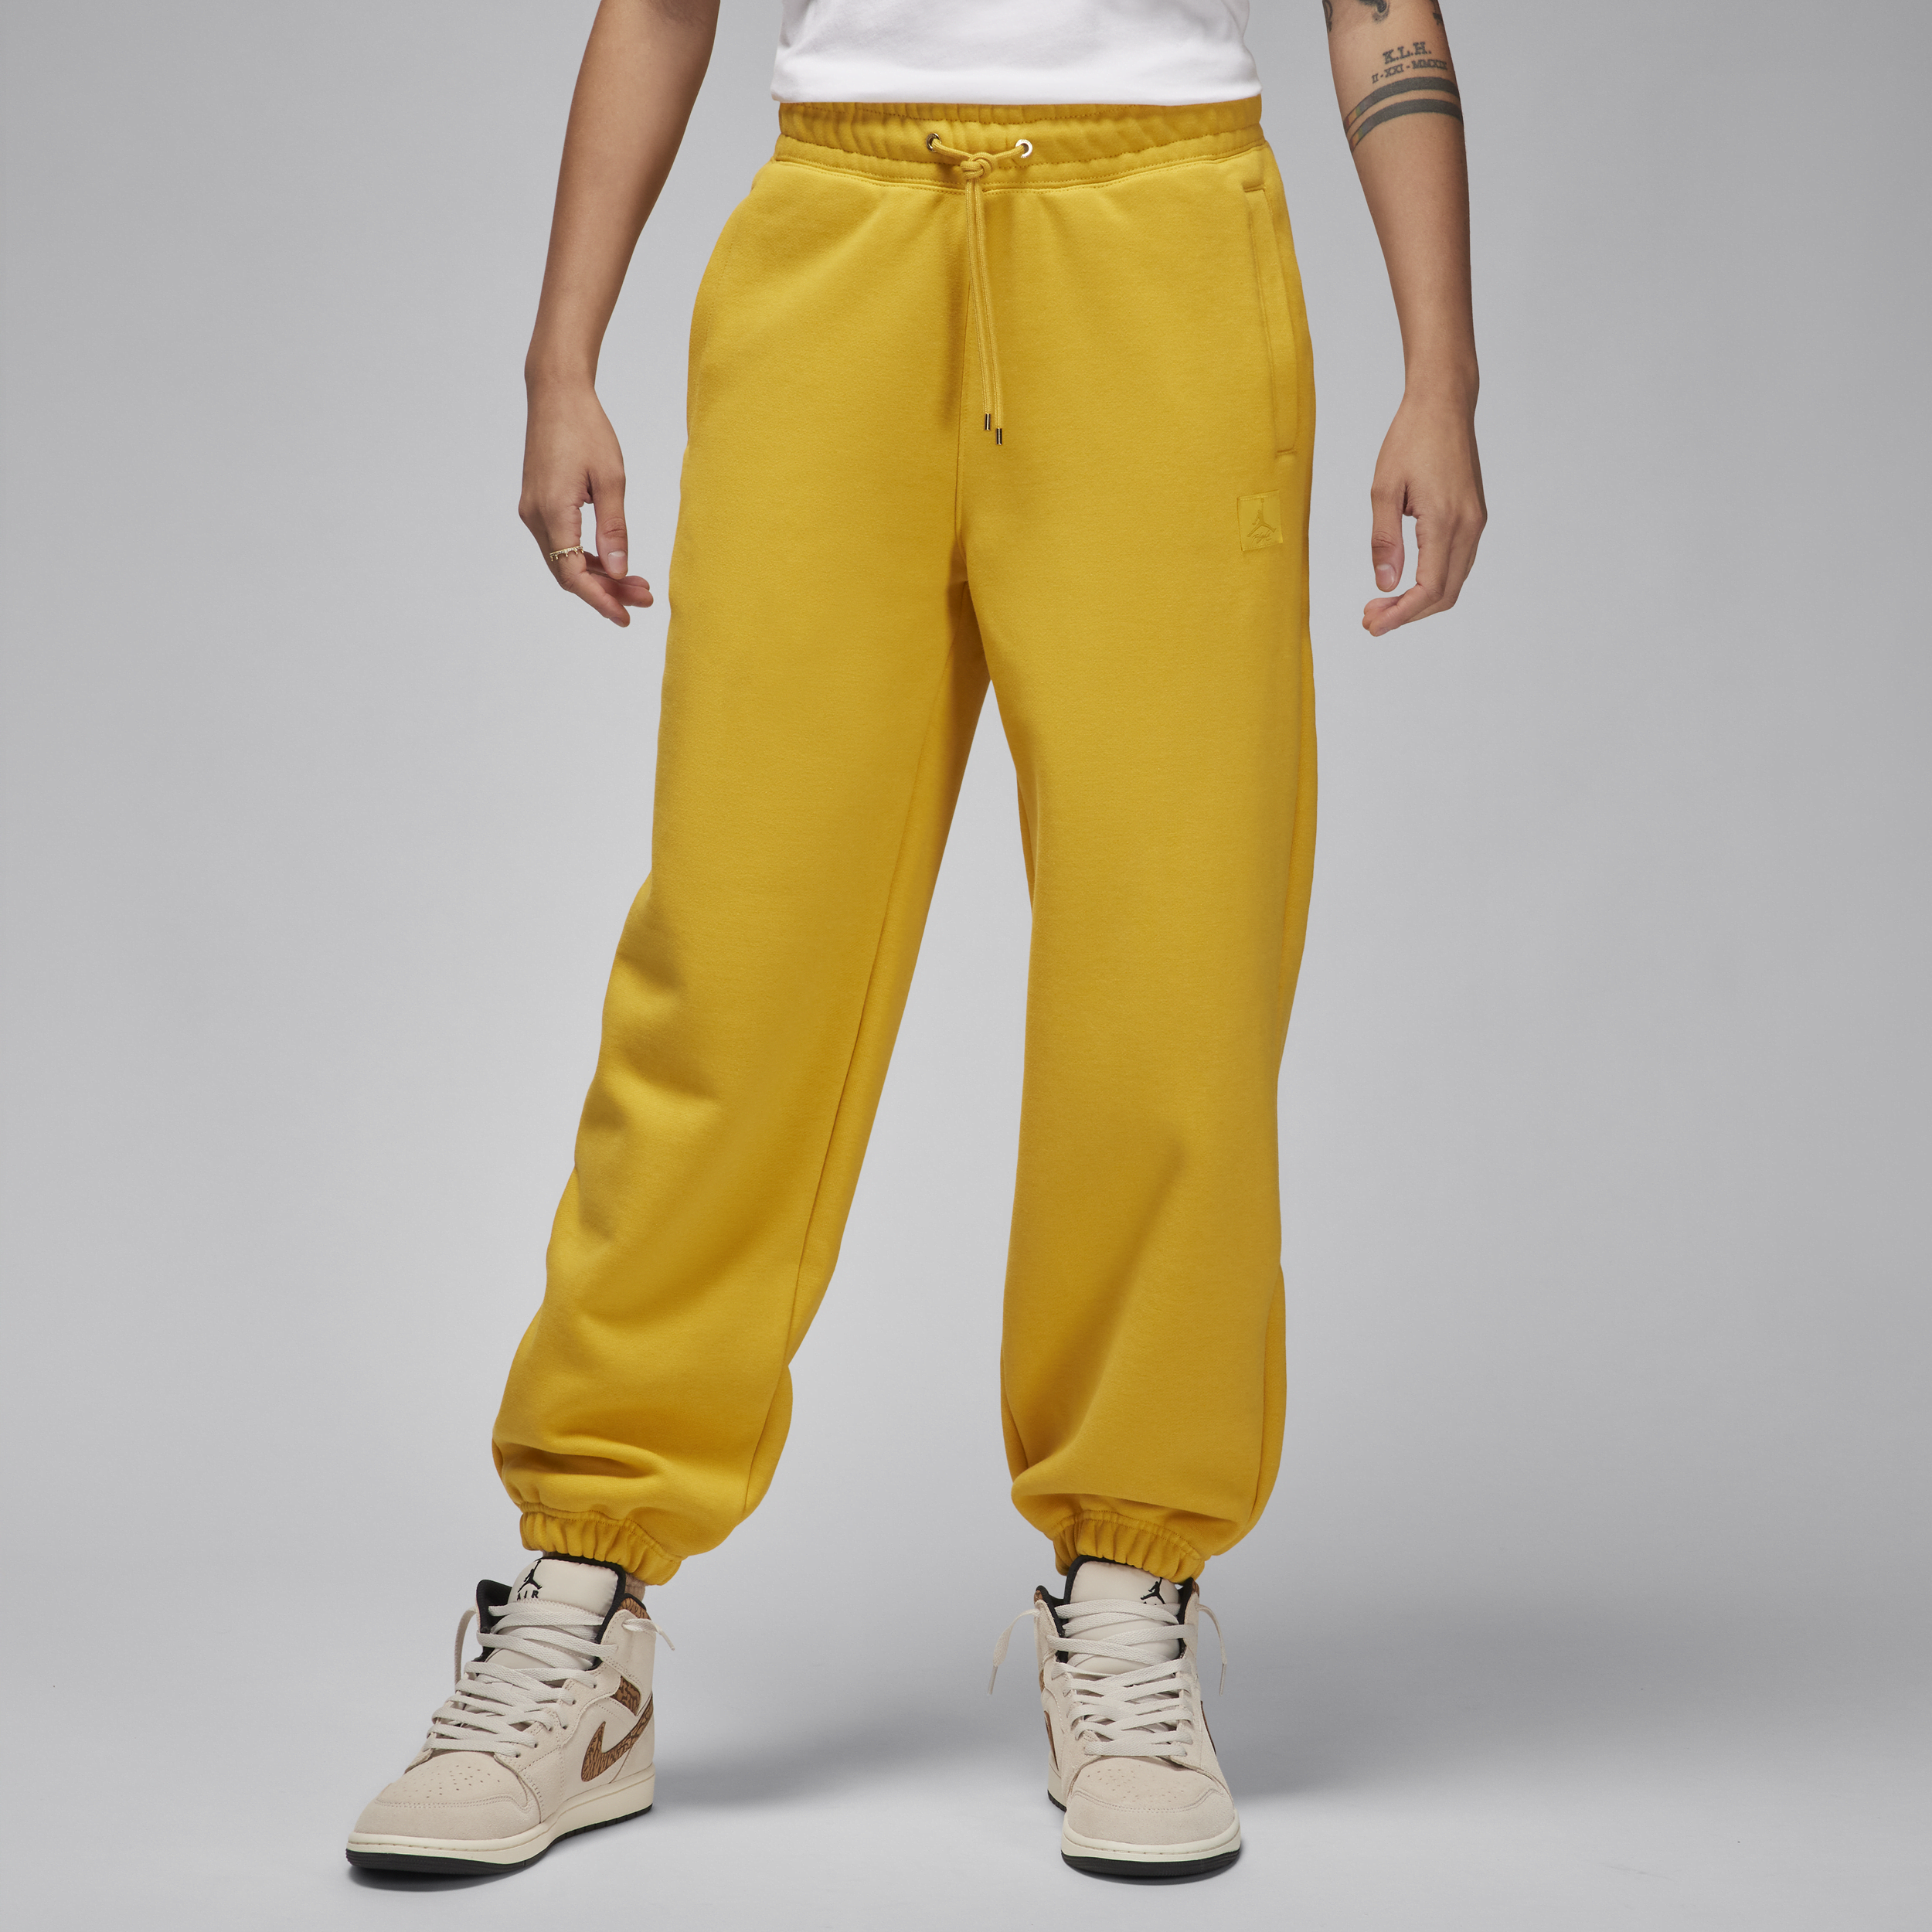 Jordan Flight Fleece Pantalón - Mujer - Amarillo